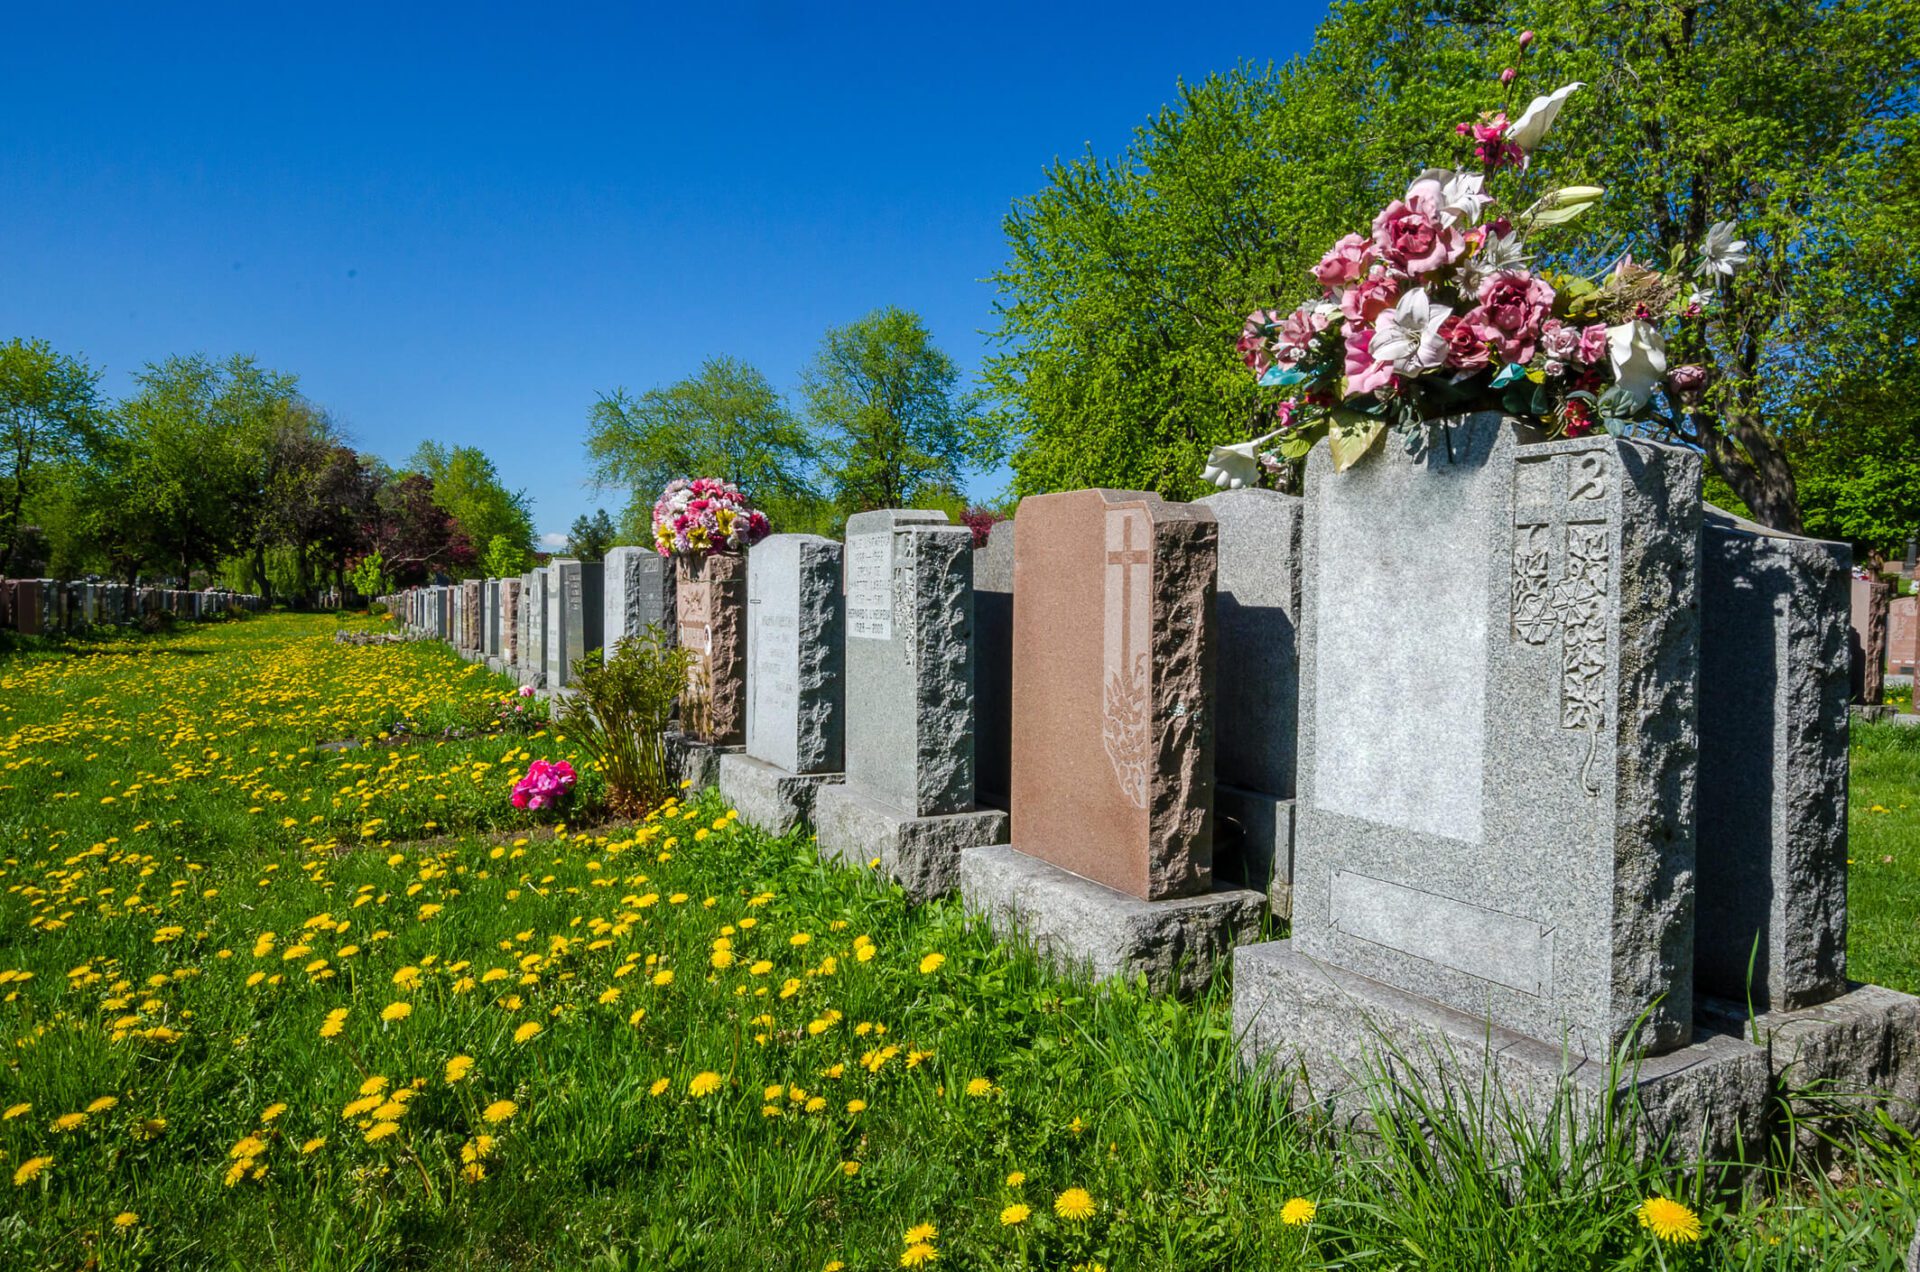 Choosing Cemetery Flowers